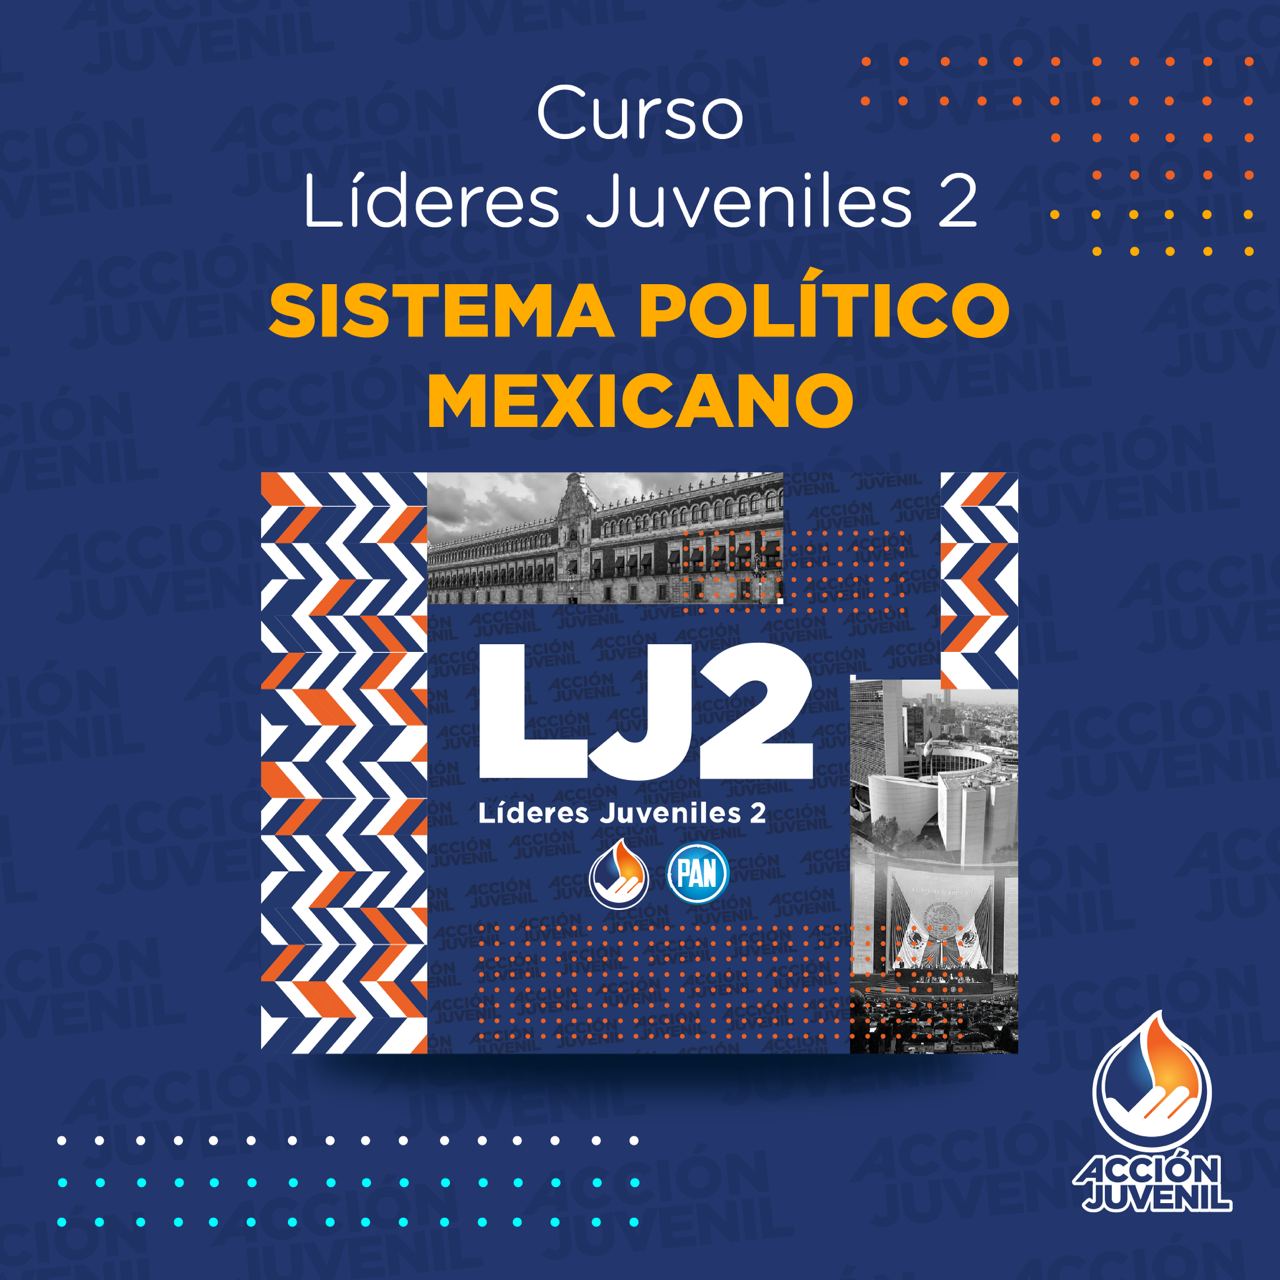 Curso Líderes Juveniles 2 Sistema Político Mexicano Benito Juarez, QR 25/06/22